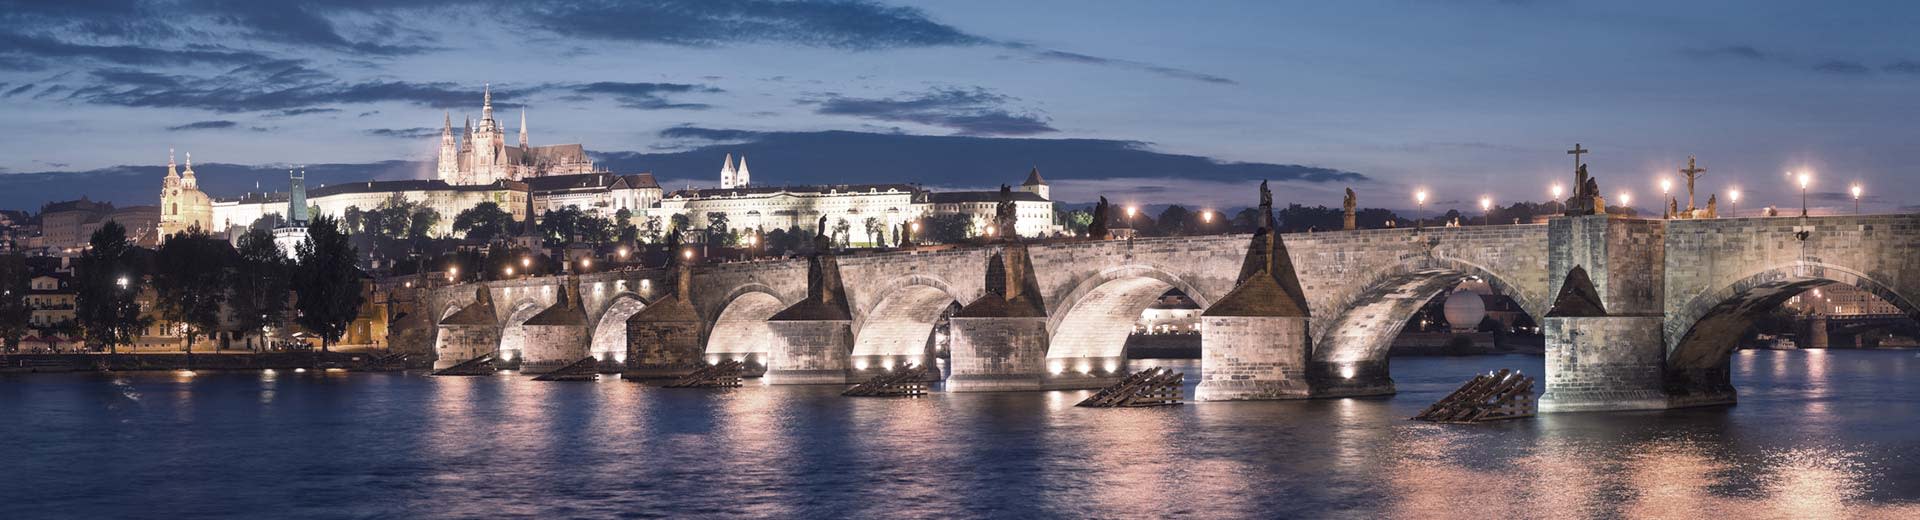 Le célèbre pont de Charles à Prague est habilement illuminé sous un ciel de crépuscule ou d'aube, avec des flèches historiques en arrière-plan.	